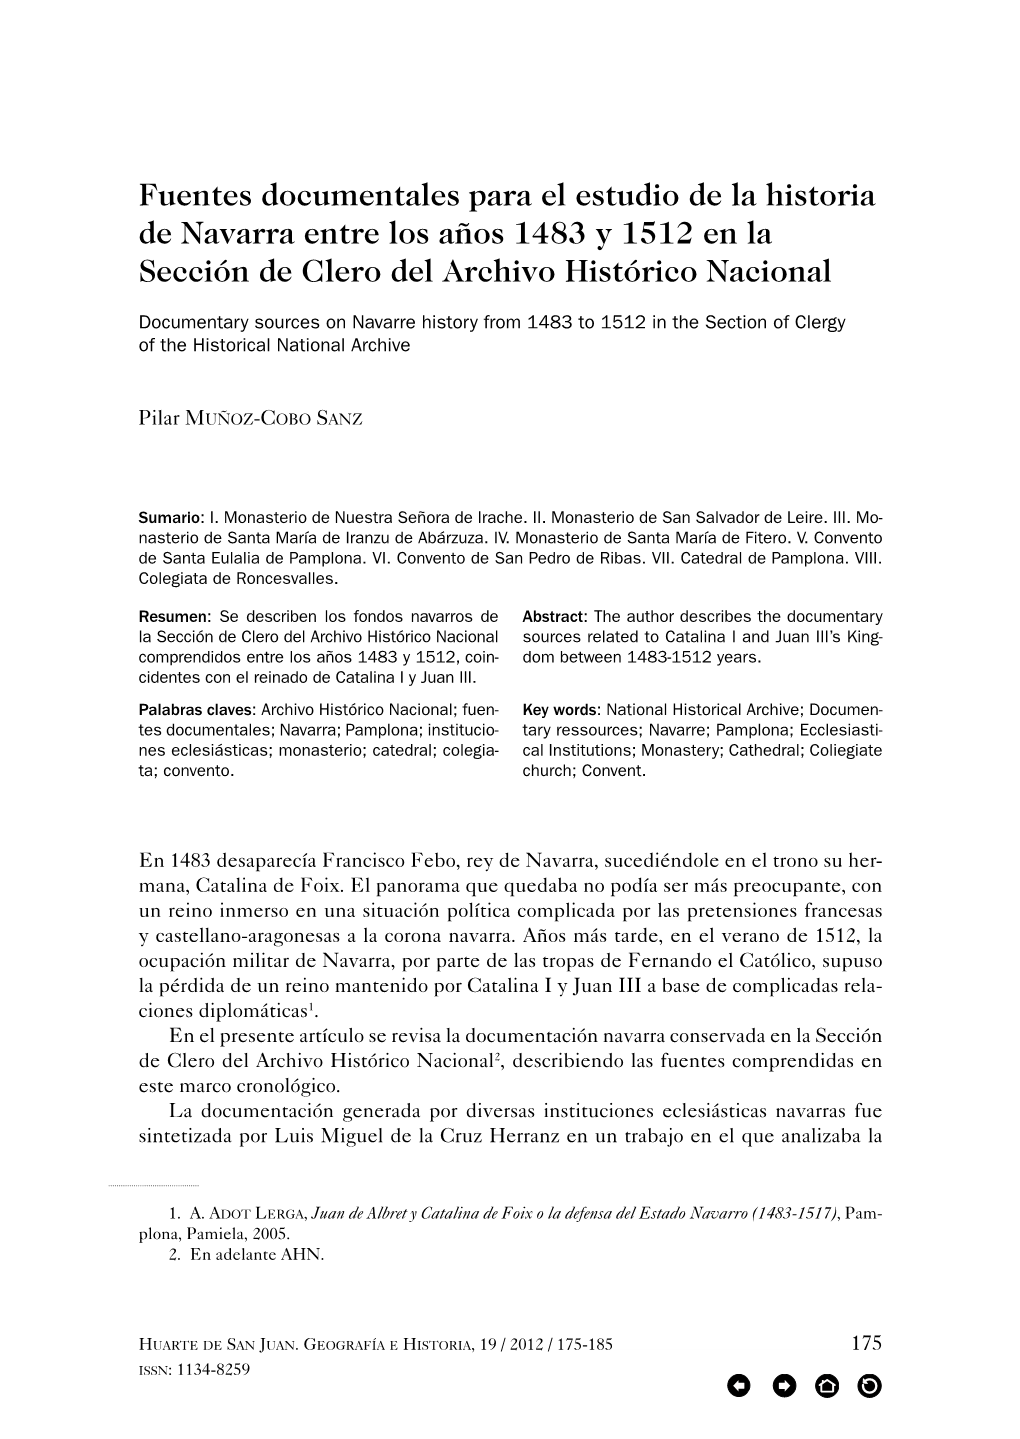 Fuentes Documentales Para El Estudio De La Historia De Navarra Entre Los Años 1483 Y 1512 En La Sección De Clero Del Archivo Histórico Nacional